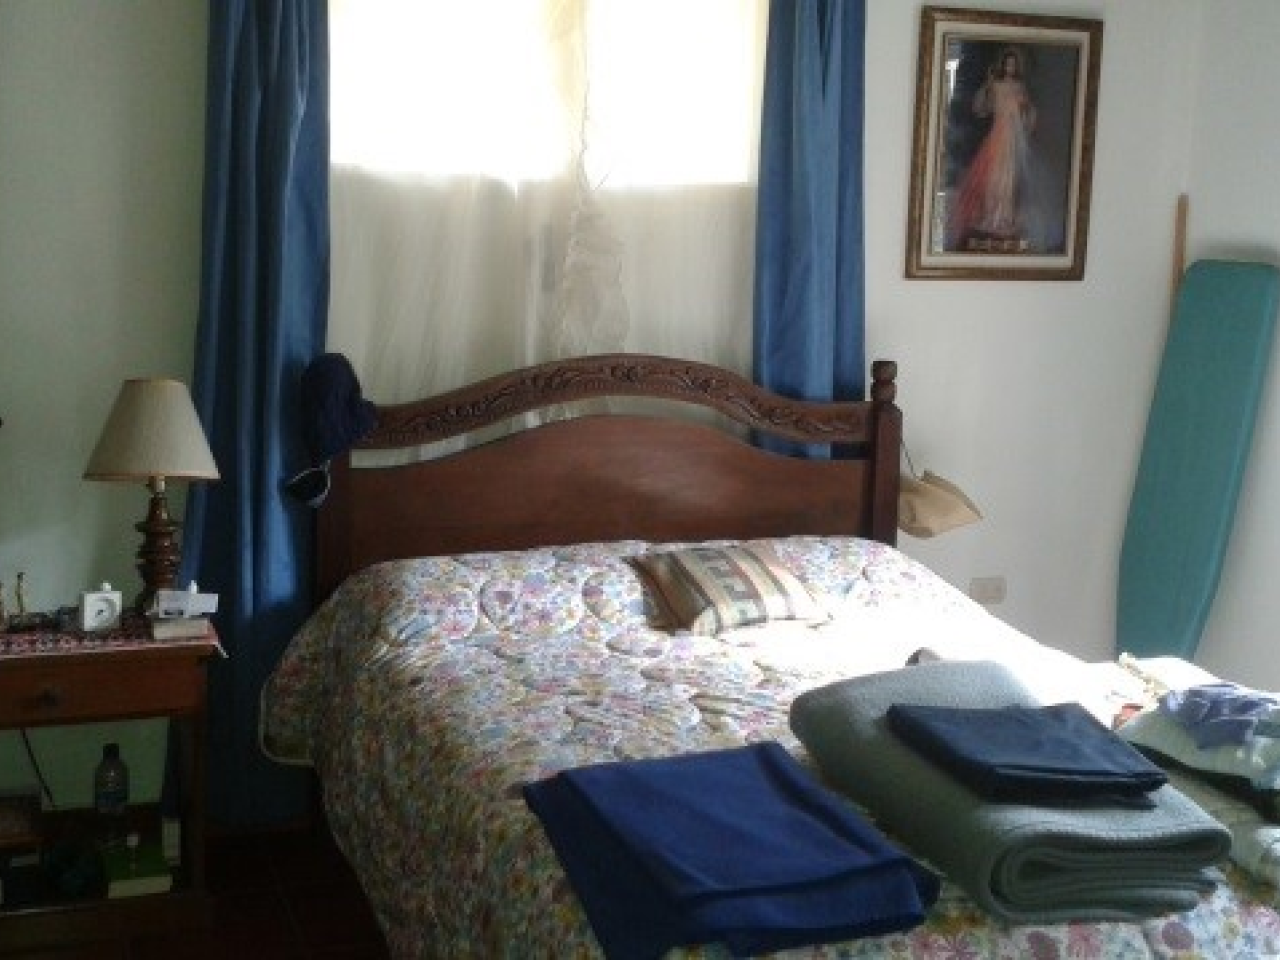 Habitación principal con una cama matrimonial bese de madera junto una mesita de noche color cafe y una ventana con cortina de color blanco.